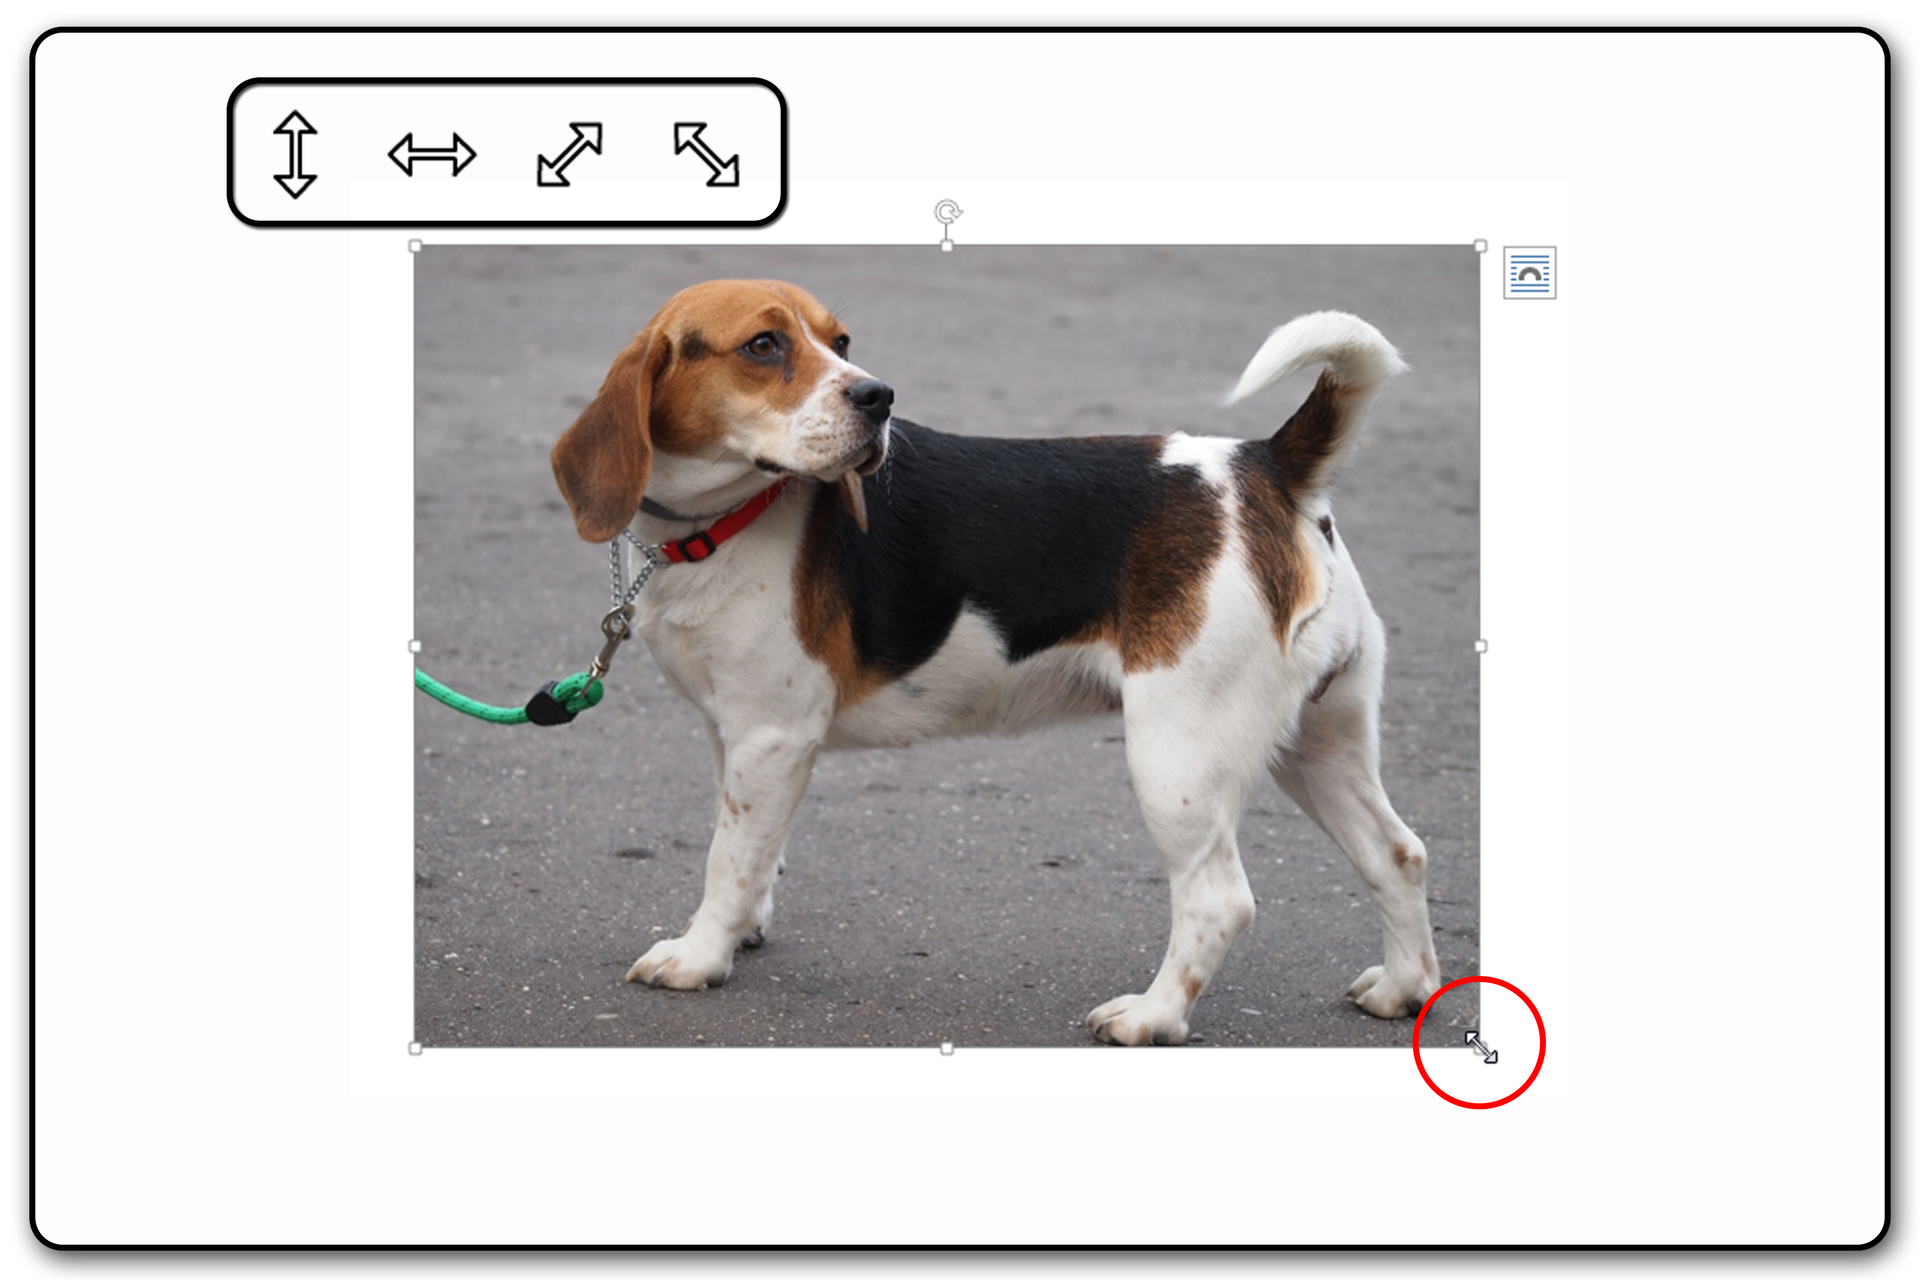 Zrzut ekranu przykładowej prezentacji ze zdjęciem i widocznym uchwytem zmiany rozmiaru obiektu nad zaznaczonym obrazem. Na zrzucie jest pies.